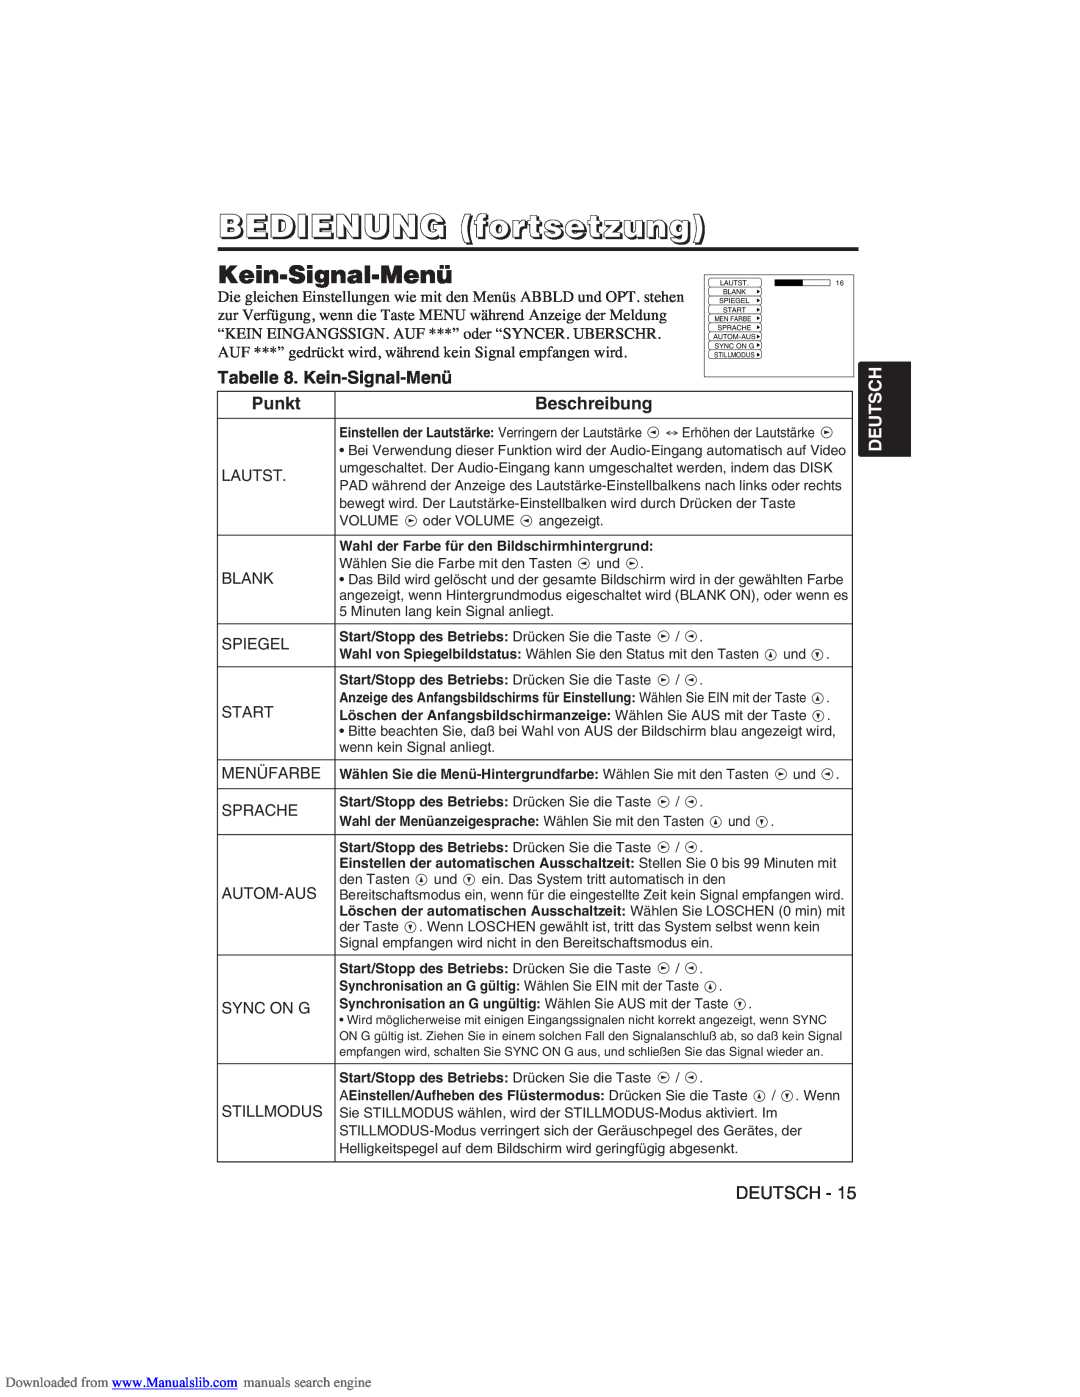 Hitachi CP-X275W user manual Tabelle 8. Kein-Signal-Menü, BEDIENUNG fortsetzung, Punkt, Beschreibung, Deutsch 